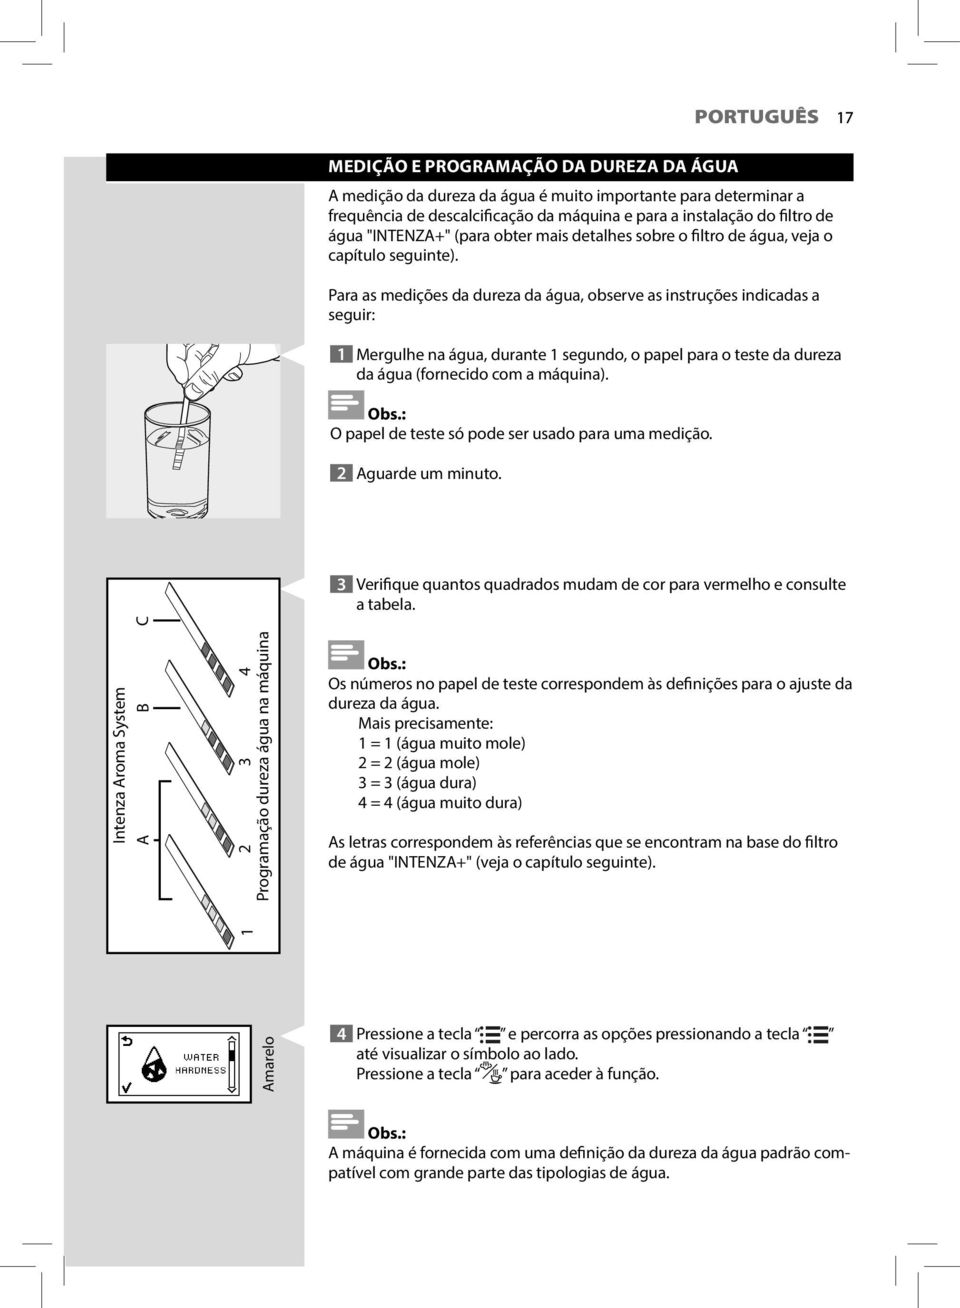 Para as medições da dureza da água, observe as instruções indicadas a seguir: 1 Mergulhe na água, durante 1 segundo, o papel para o teste da dureza da água (fornecido com a máquina). Obs.